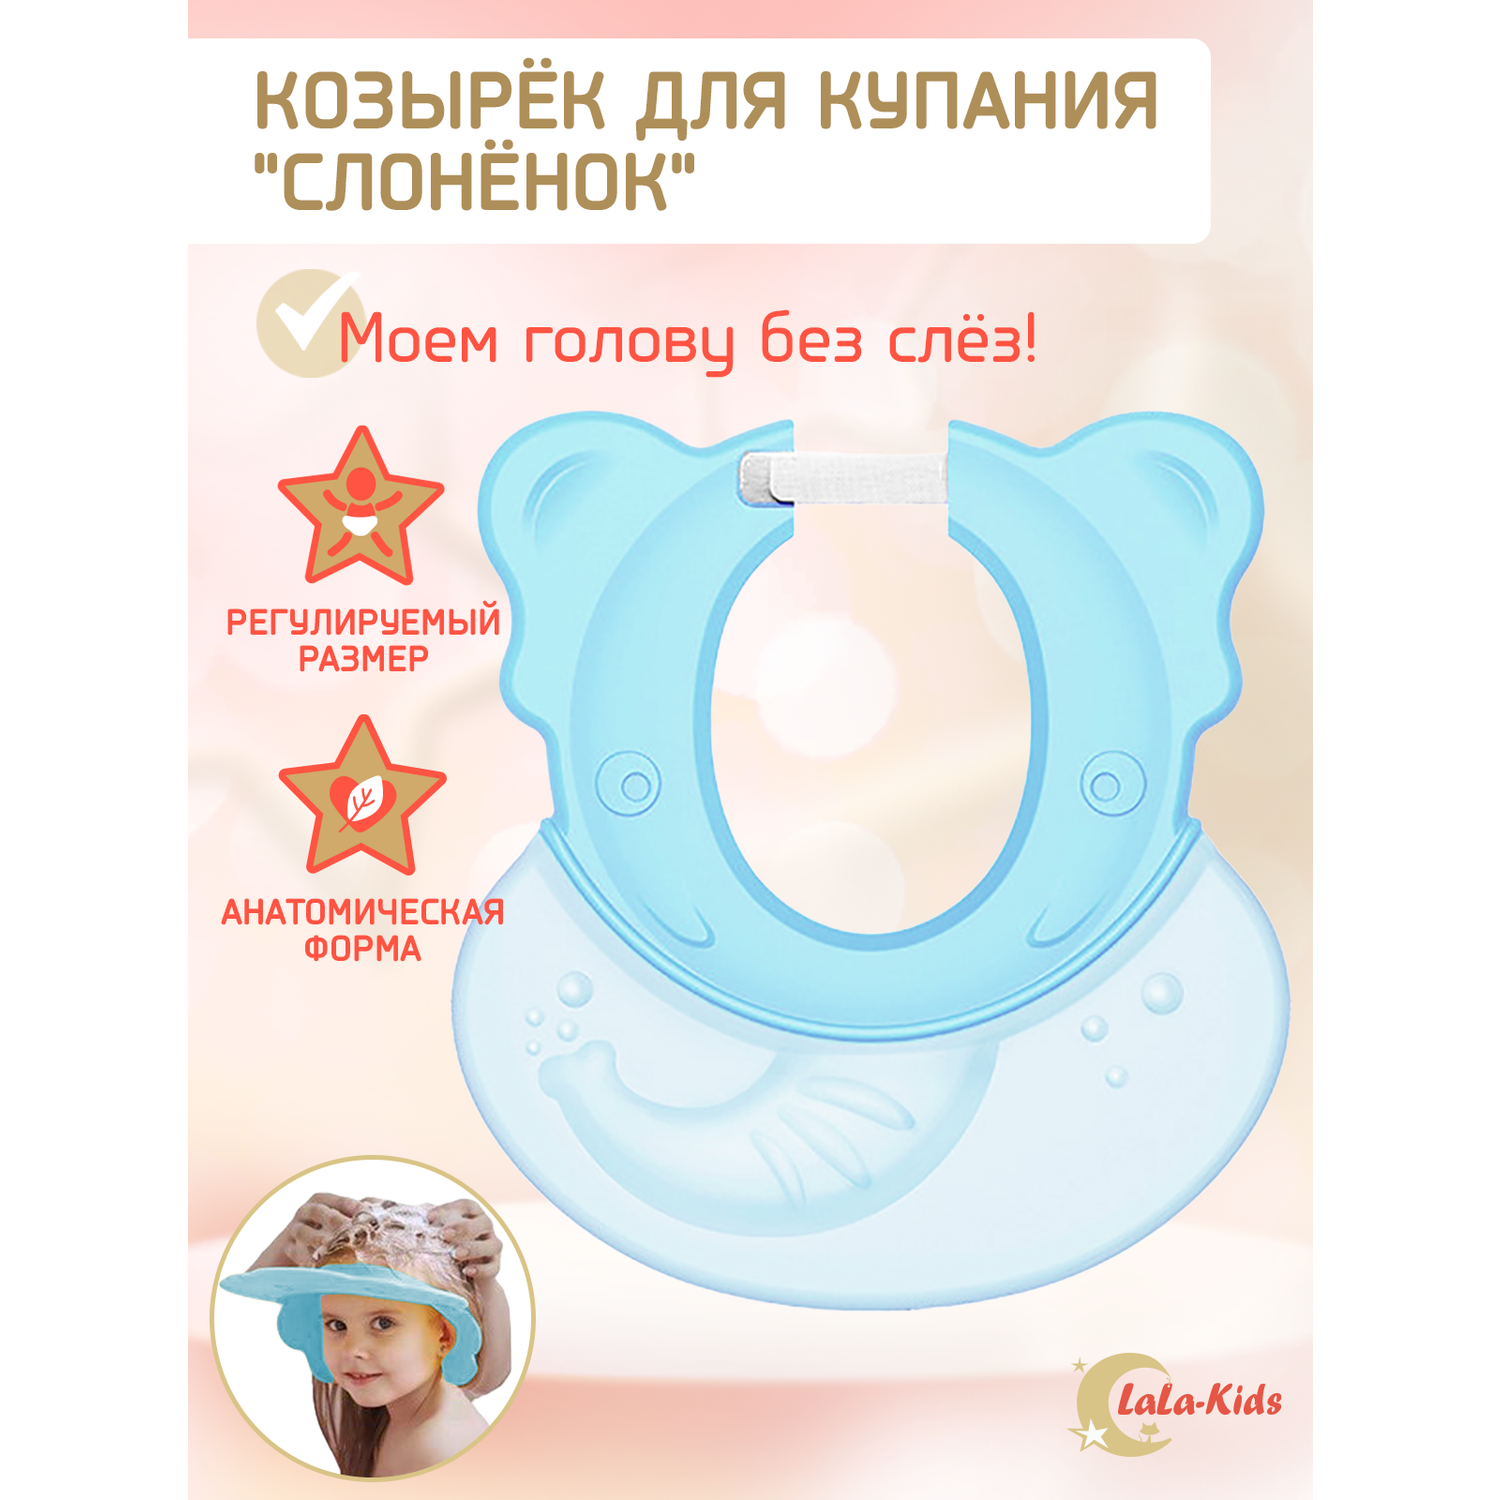 Козырек LaLa-Kids для мытья головы Слоник с регулируемым размером - фото 1